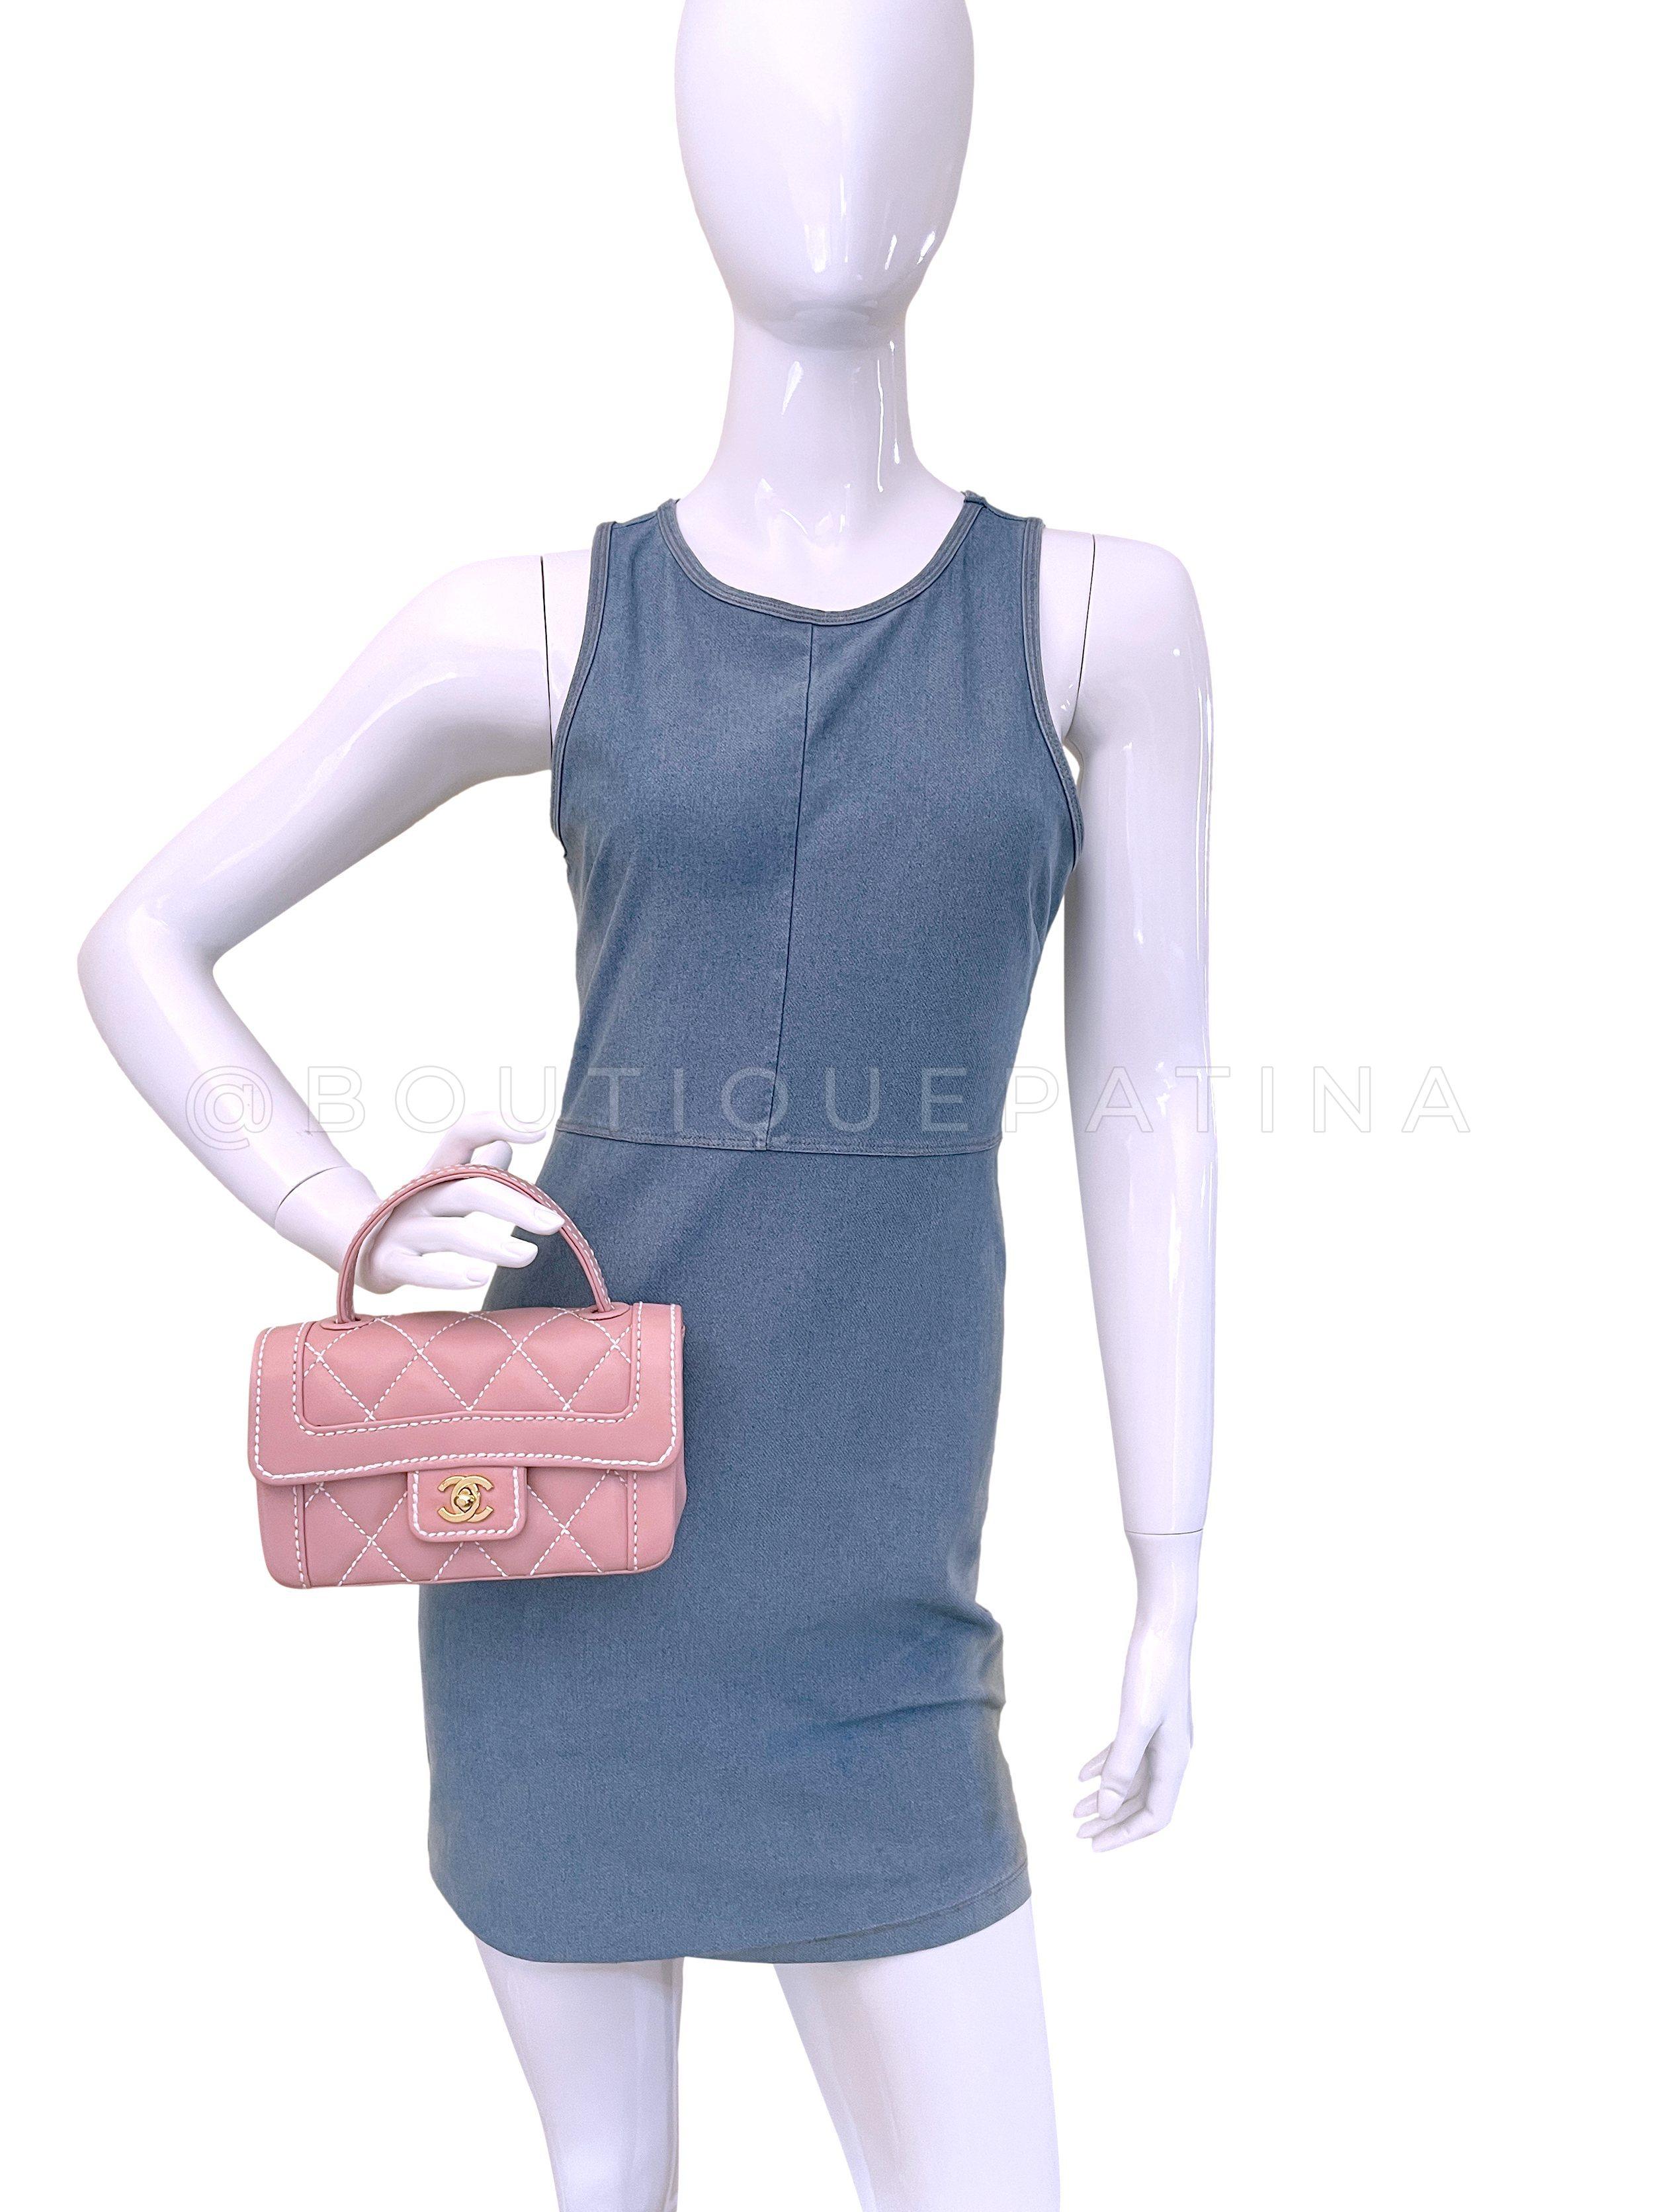 Rare Chanel Mauve Pink Wild Stitch Surpique Baby Flap Bag 66463 For Sale 8